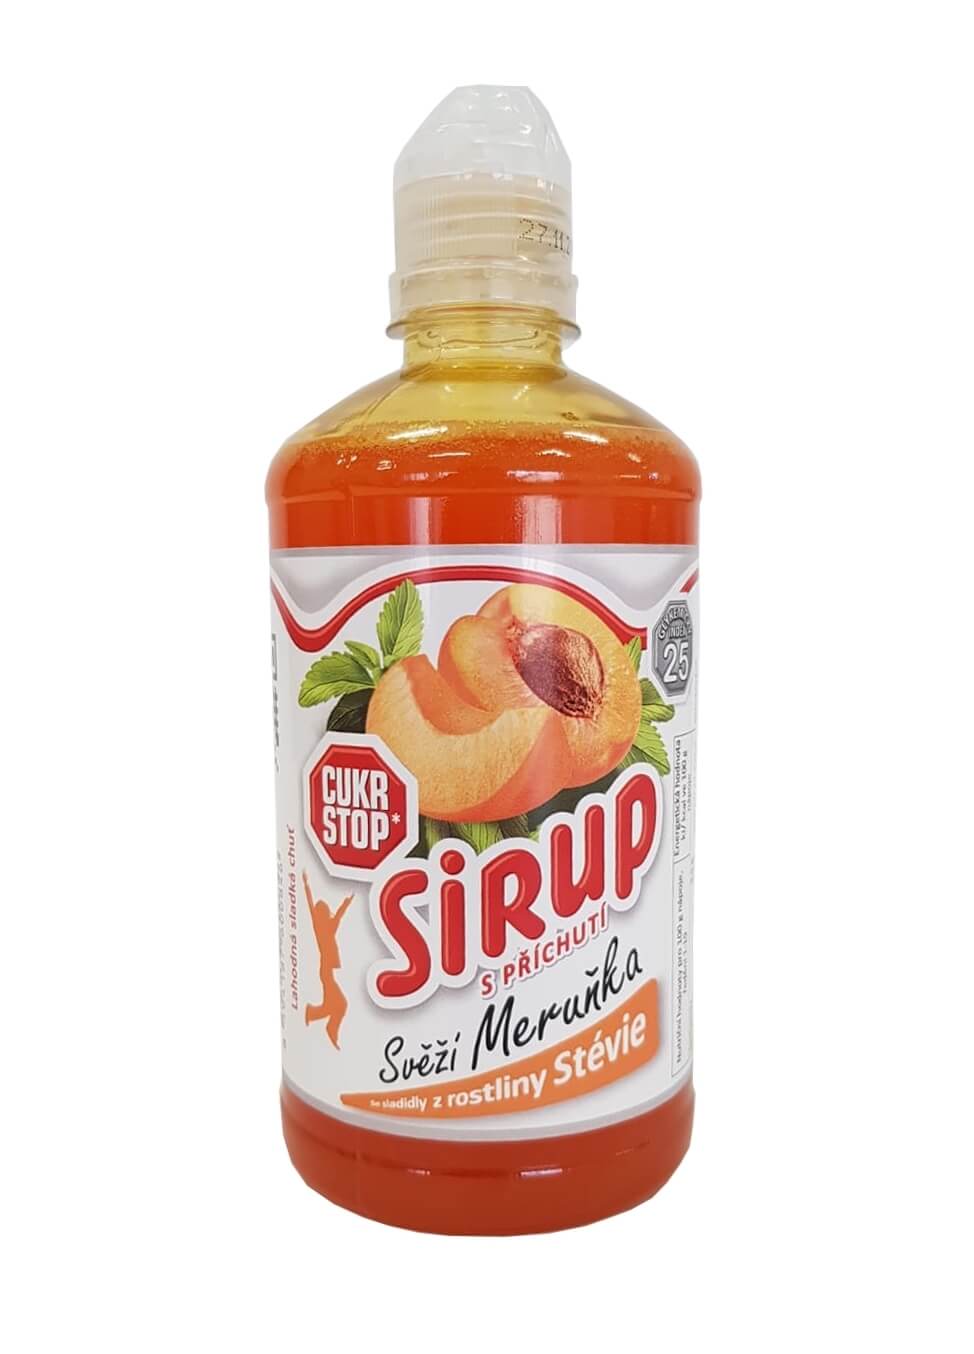 Zobrazit detail výrobku CukrStop Sirup se sladidly z rostliny stévie - svěží meruňka 650 g + 2 měsíce na vrácení zboží